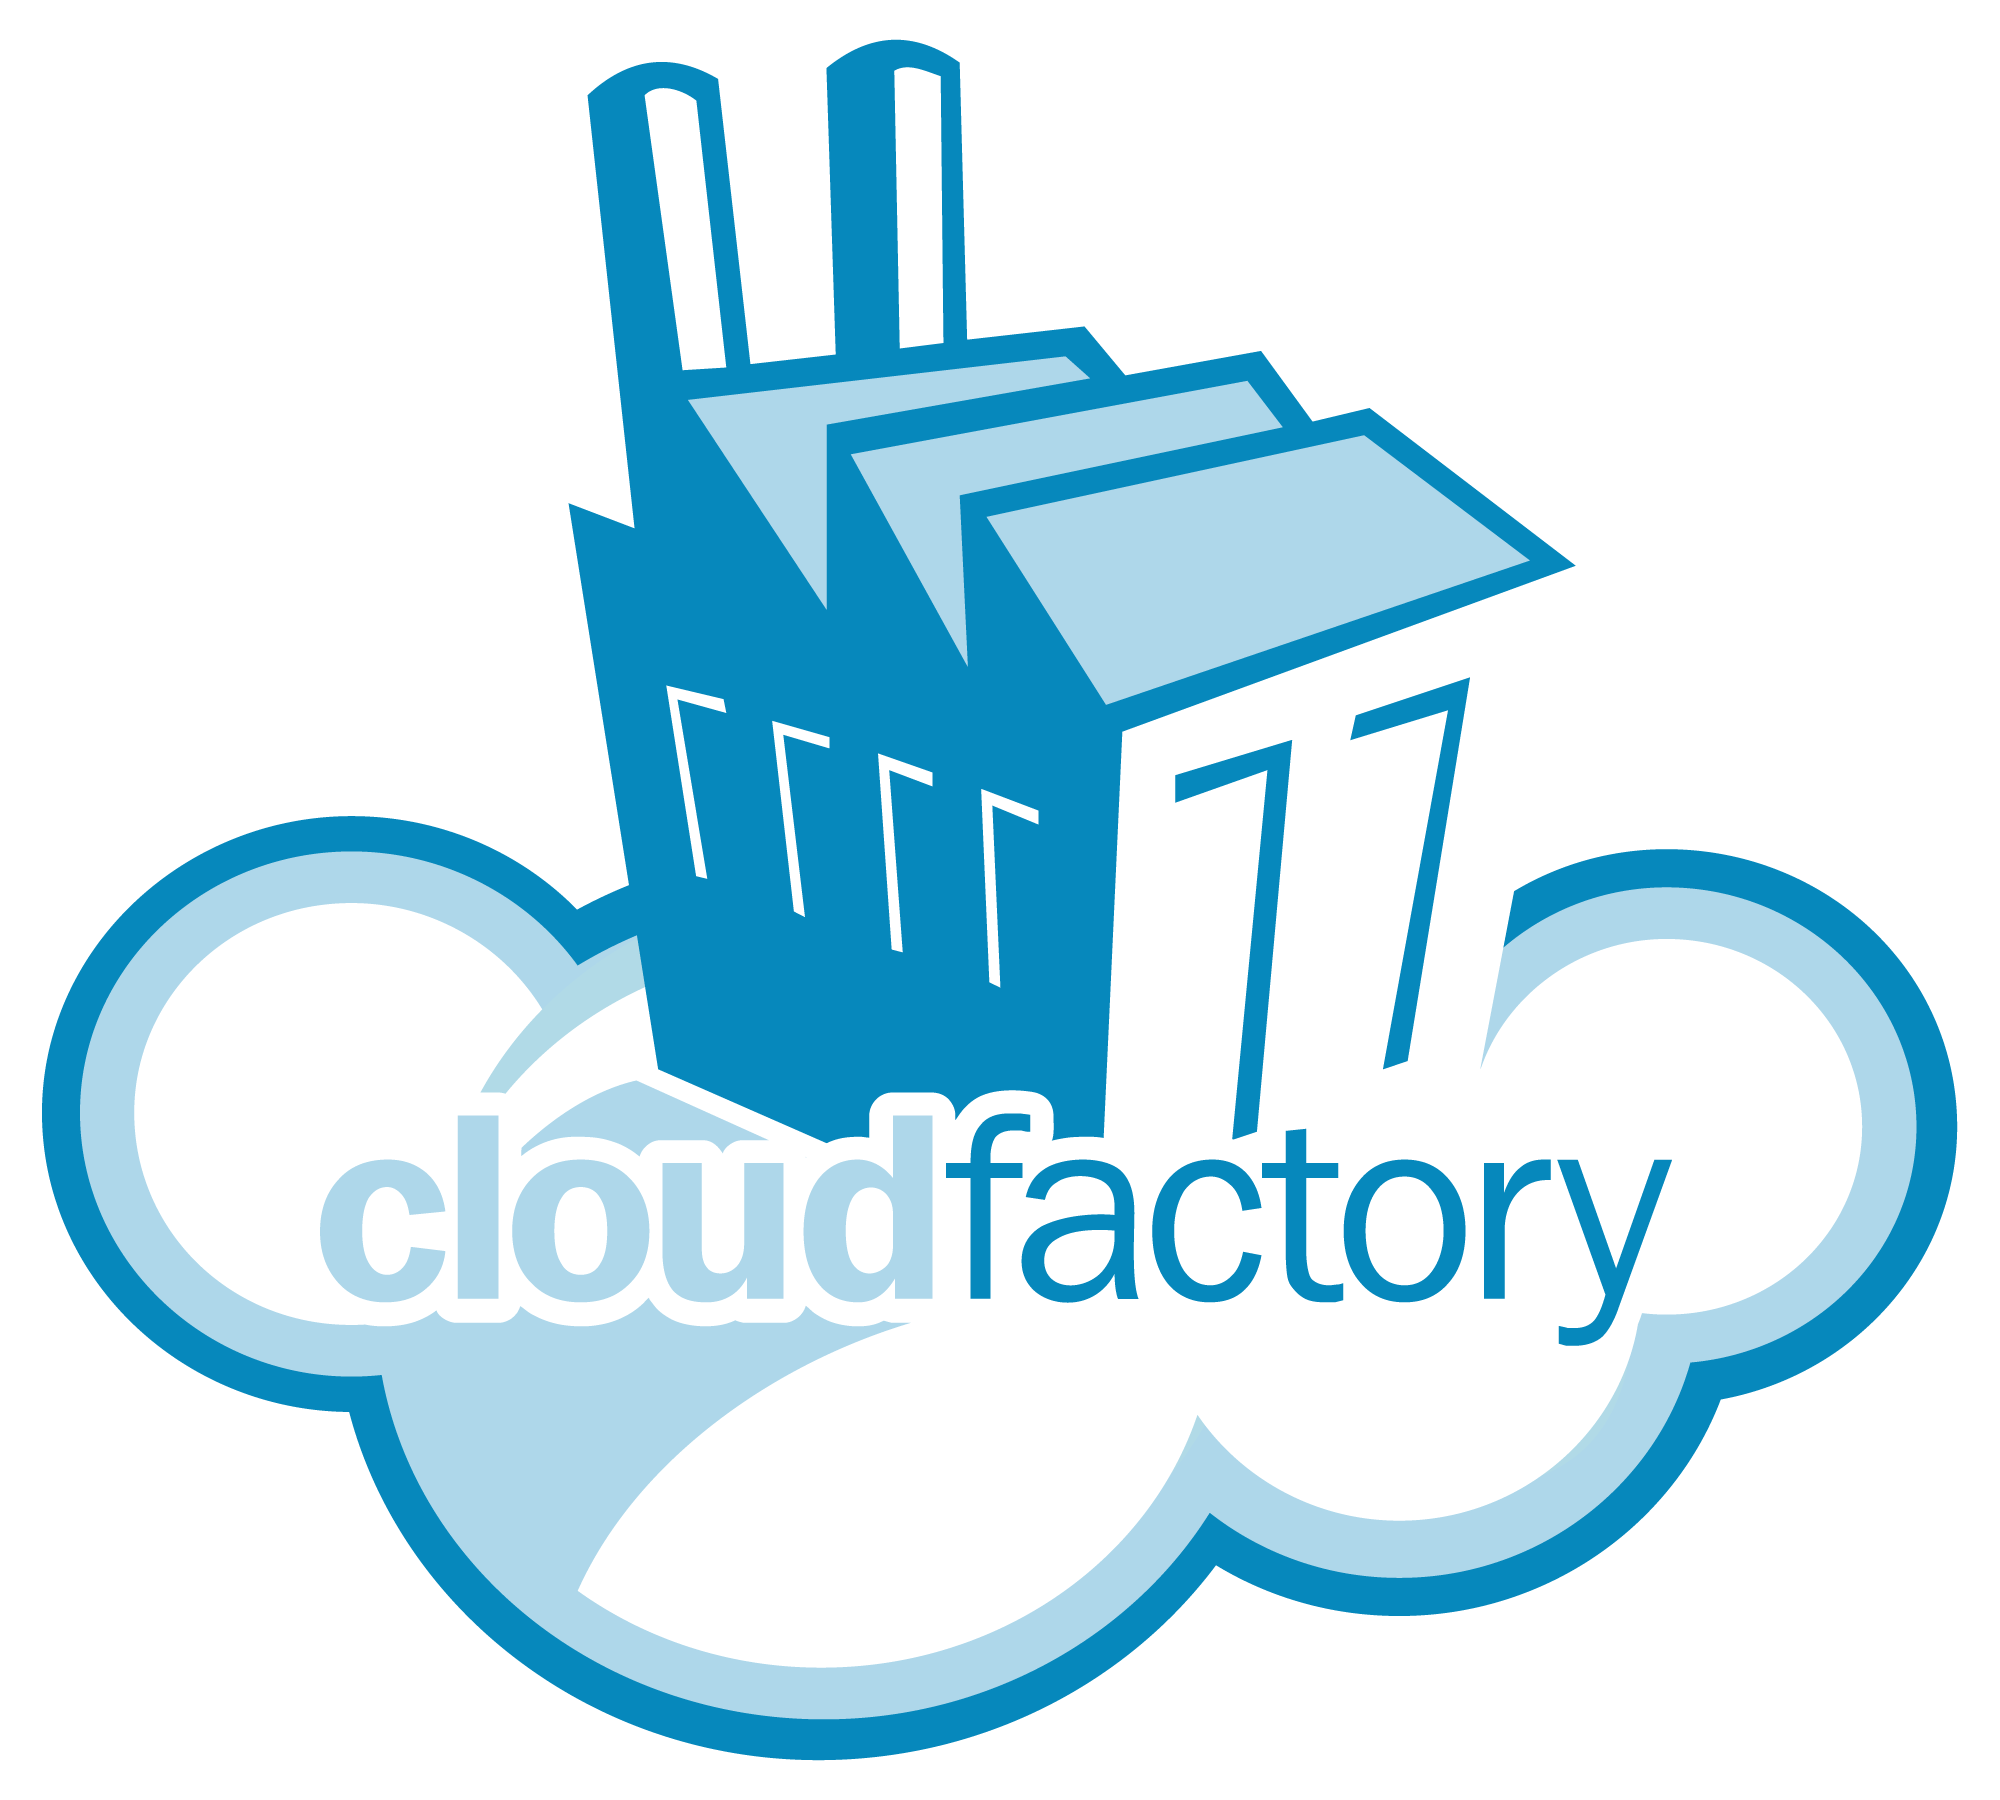 CloudFactory logo.